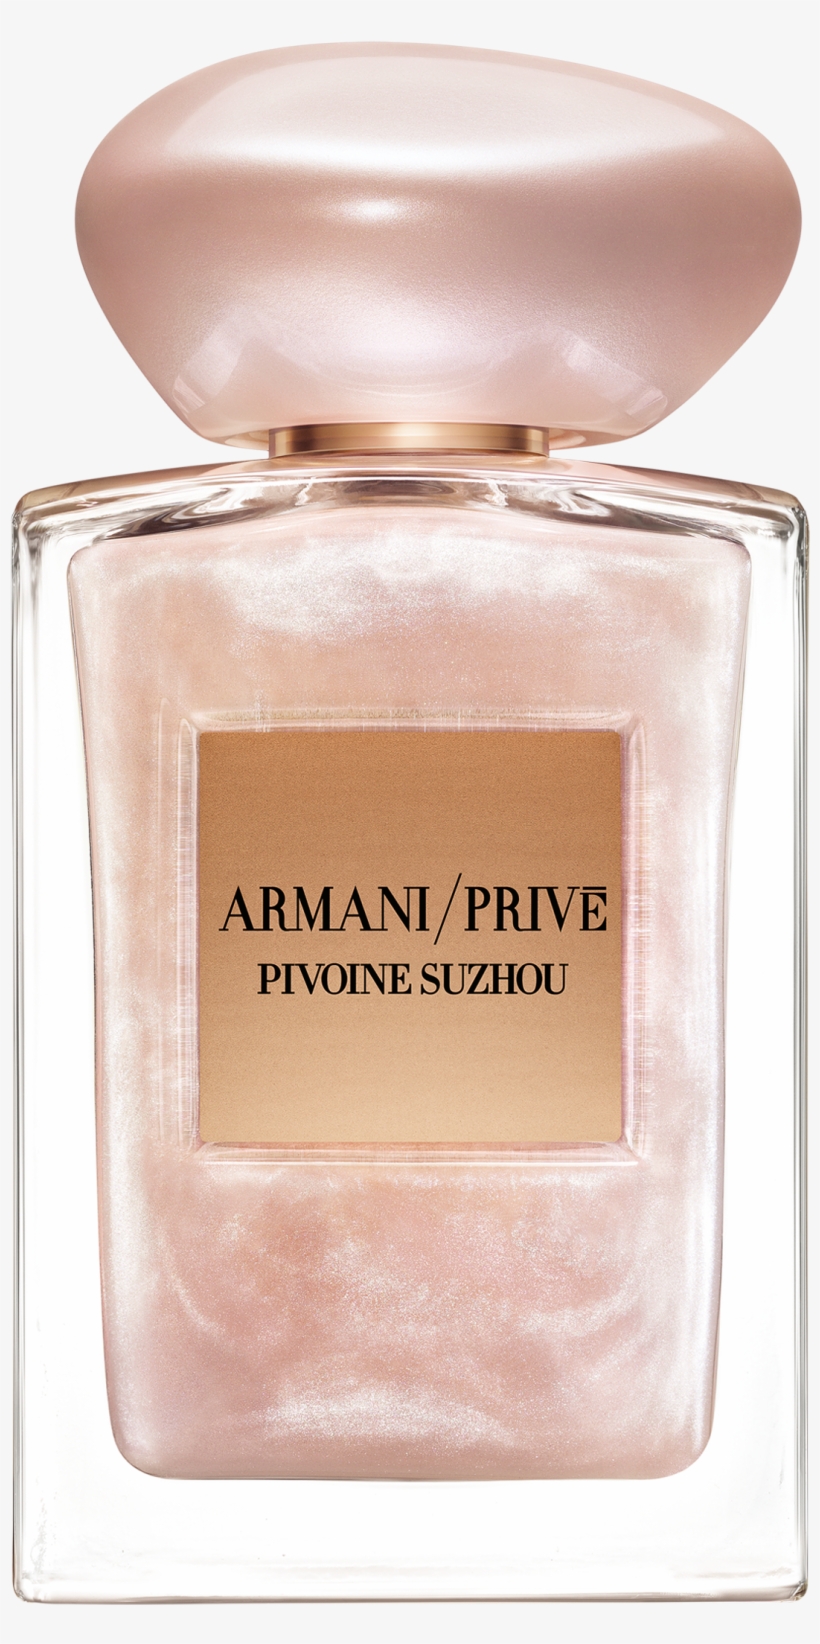 Pivoine Suzhou Soie De Nacre Fragrance - Armani Prive Pivoine Suzhou Limited Edition, transparent png #9022165